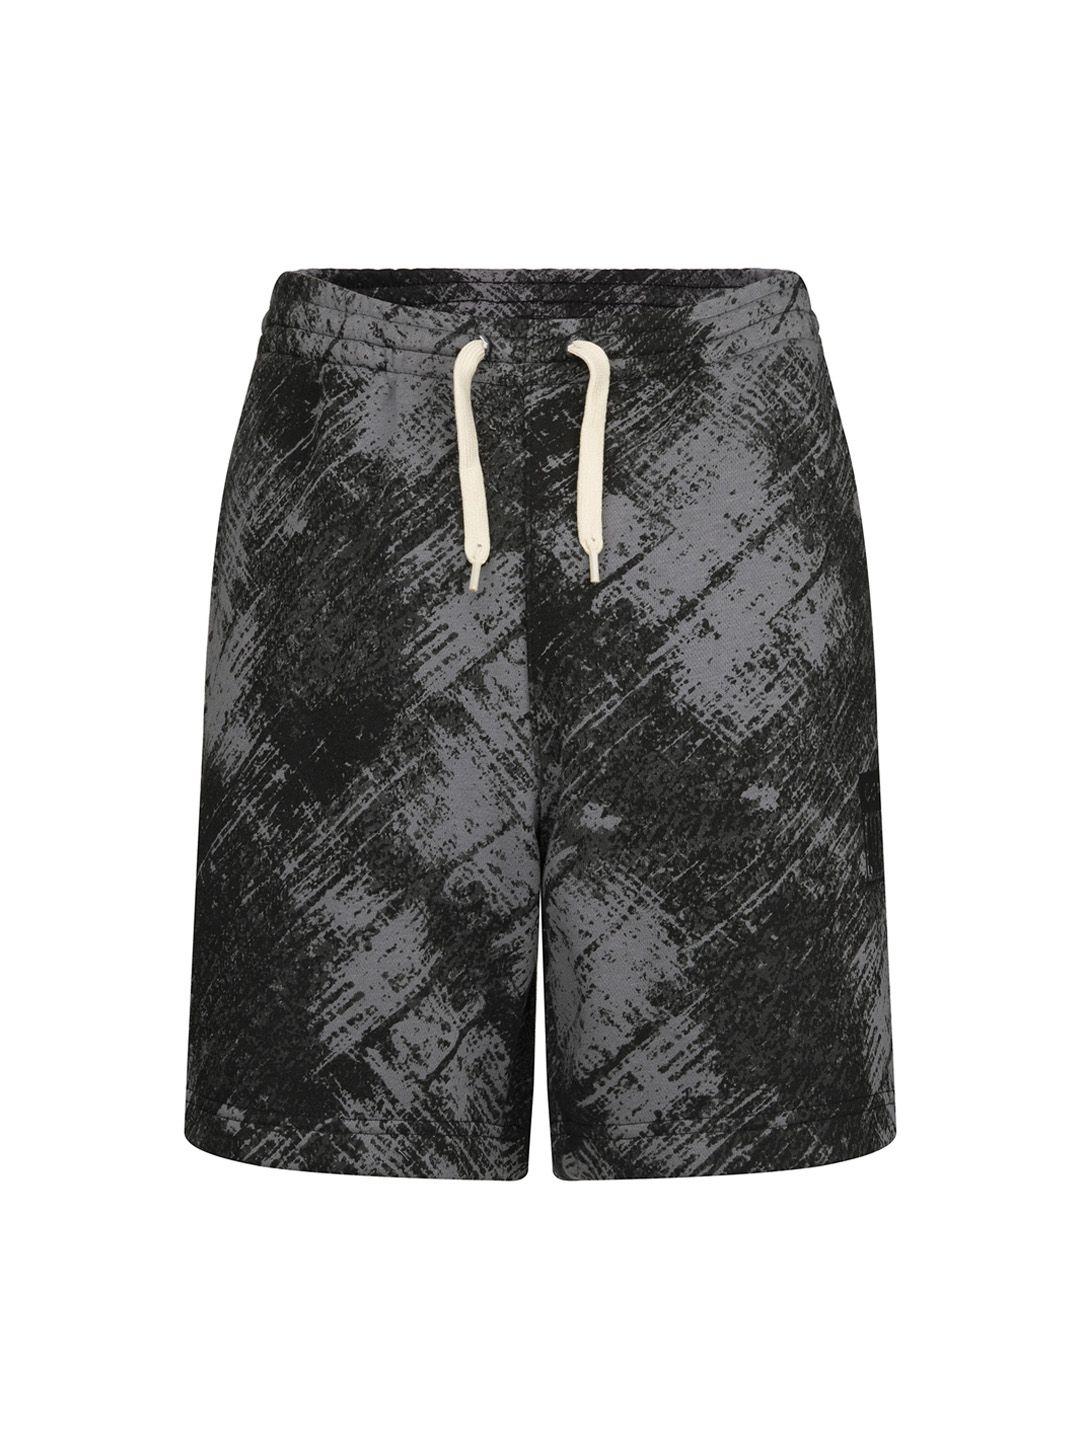 converse-boys-grey-high-rise-abstract-printed-regular-shorts